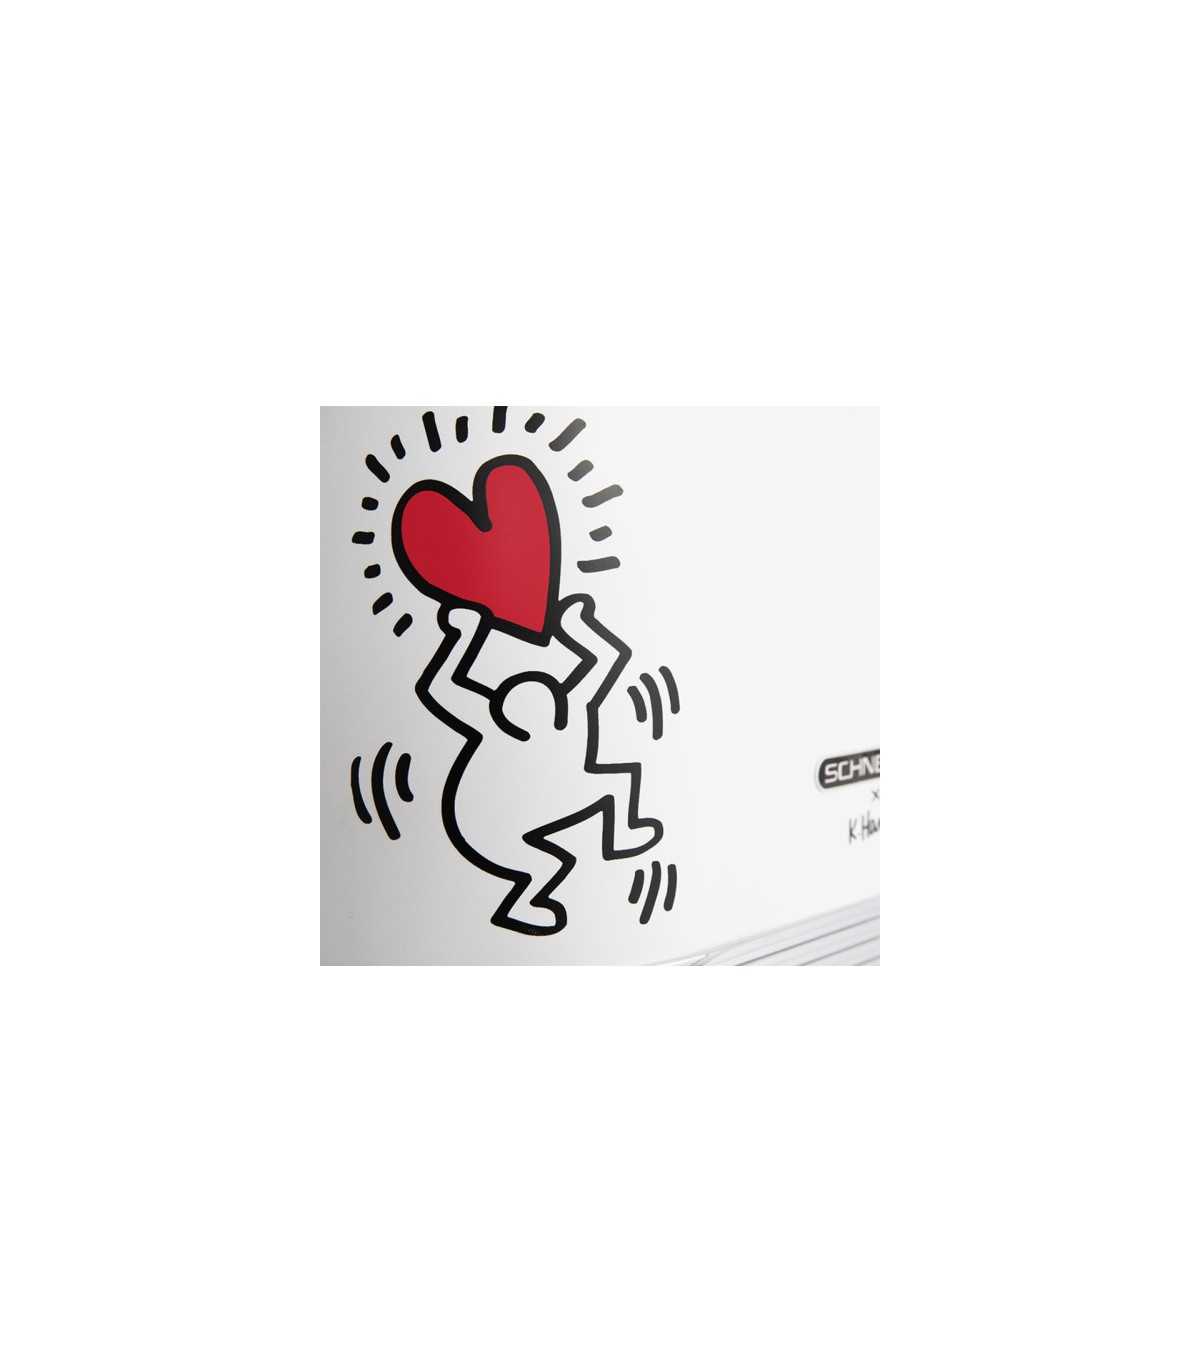 SCHNEIDER SCTO2KTECW Tostadora  2 Ranuras 815W Vintage  Colección Keith Haring, Blanco Mate Tech Art _detalle corazón